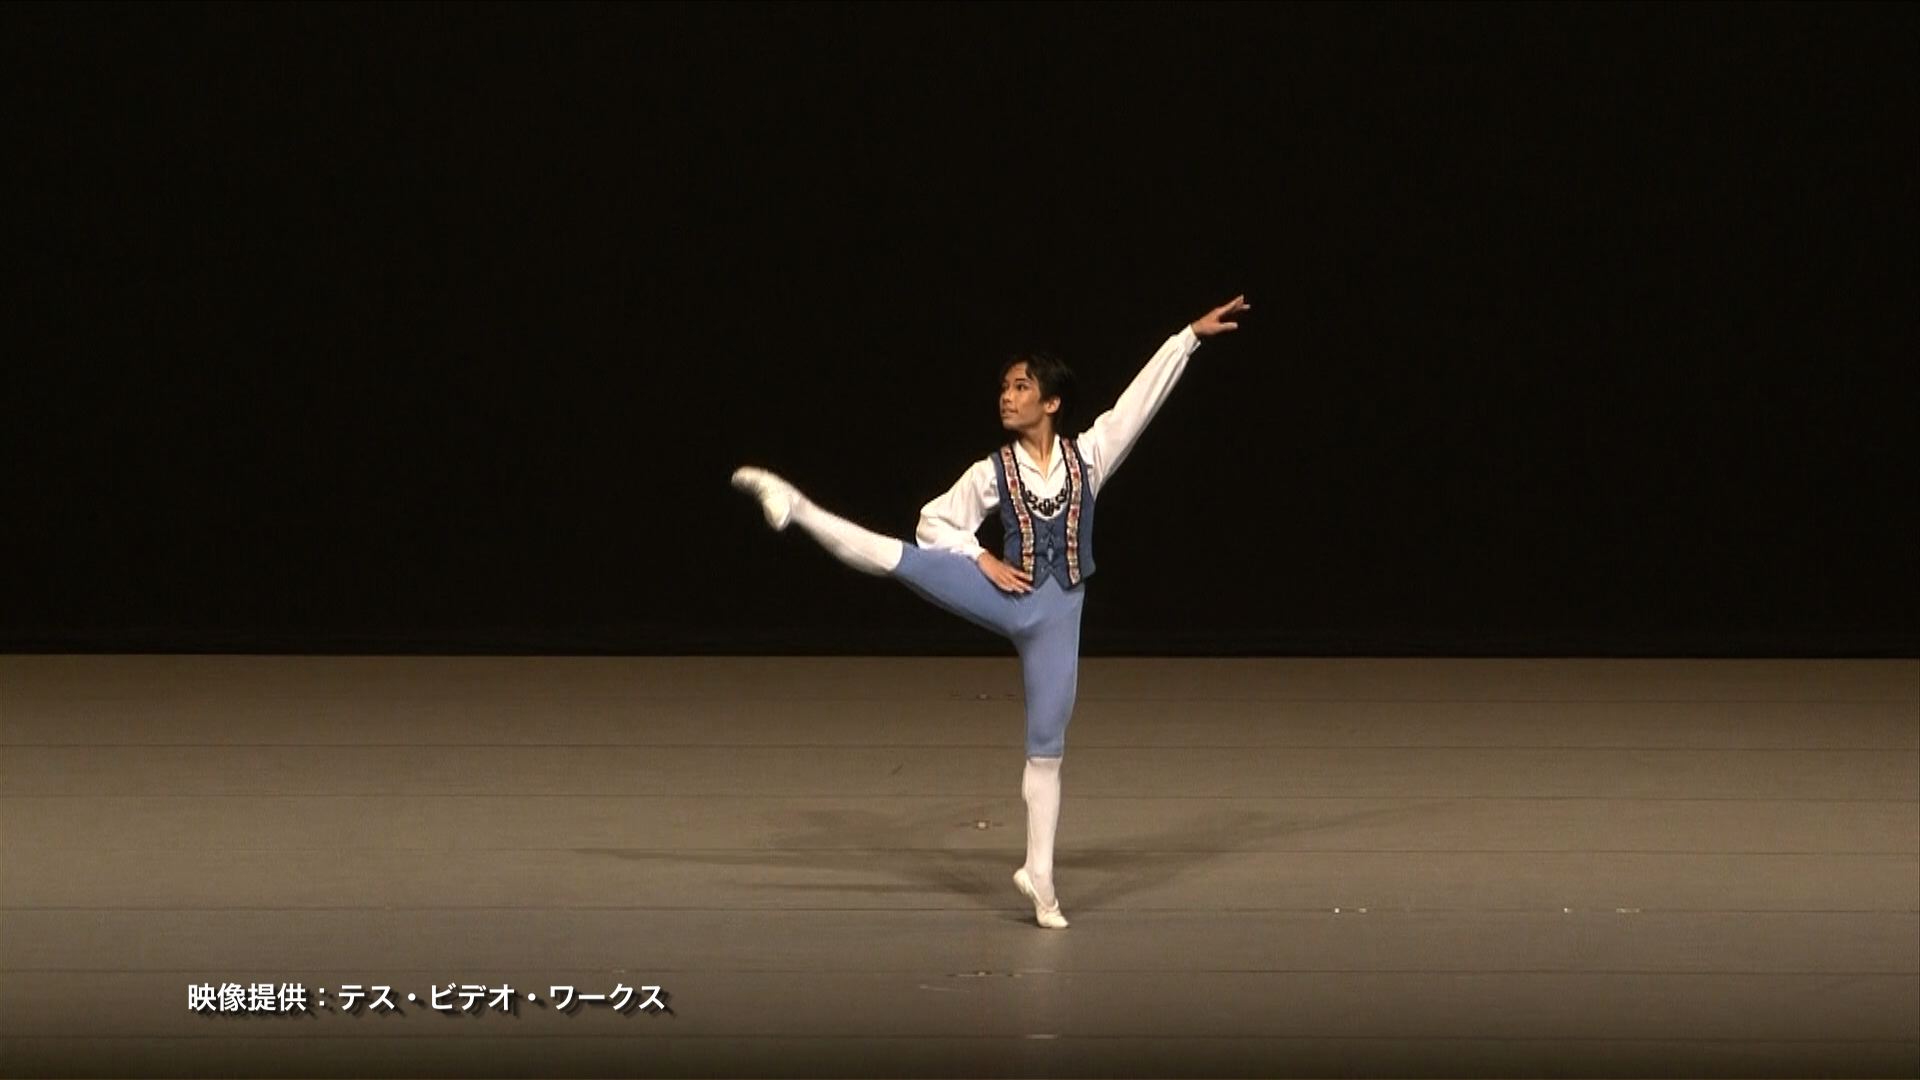 2021年 第53回埼玉全国舞踊コンクール クラシックバレエジュニアの結果 3位の1 – video